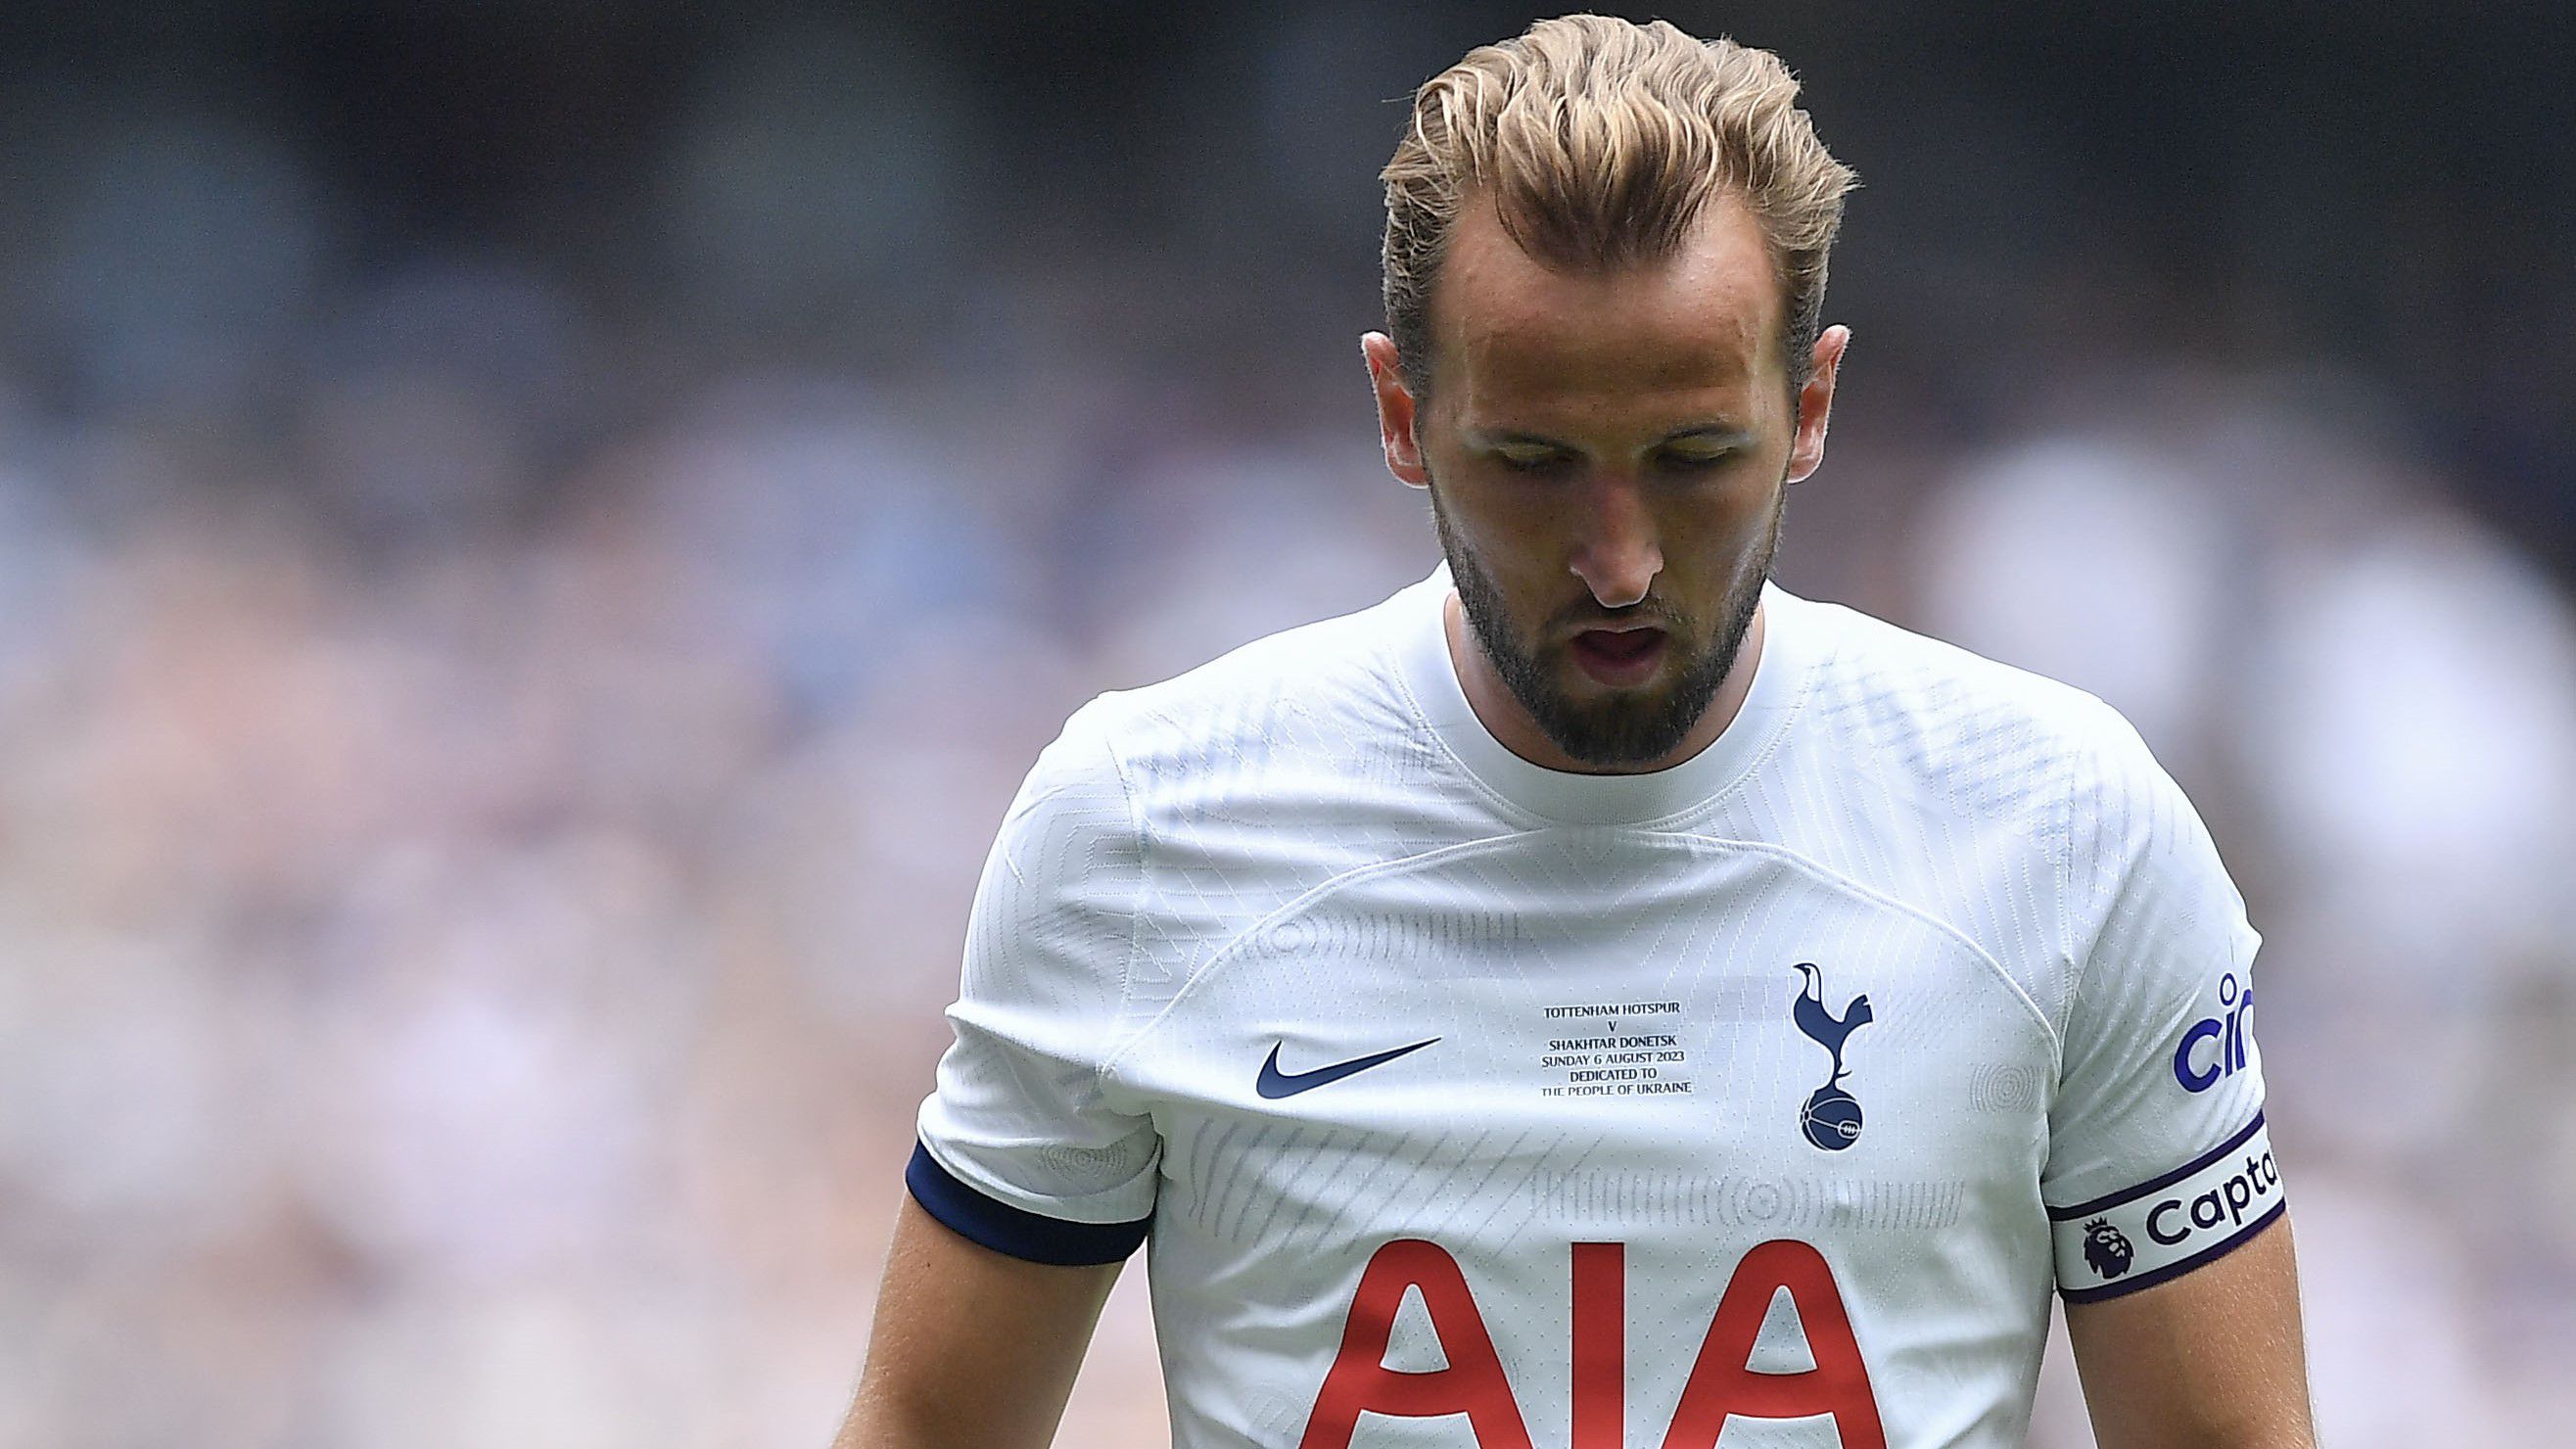 A Tottenham elutasította a Bayern München végső ajánlatát, így Harry Kane marad Londonban